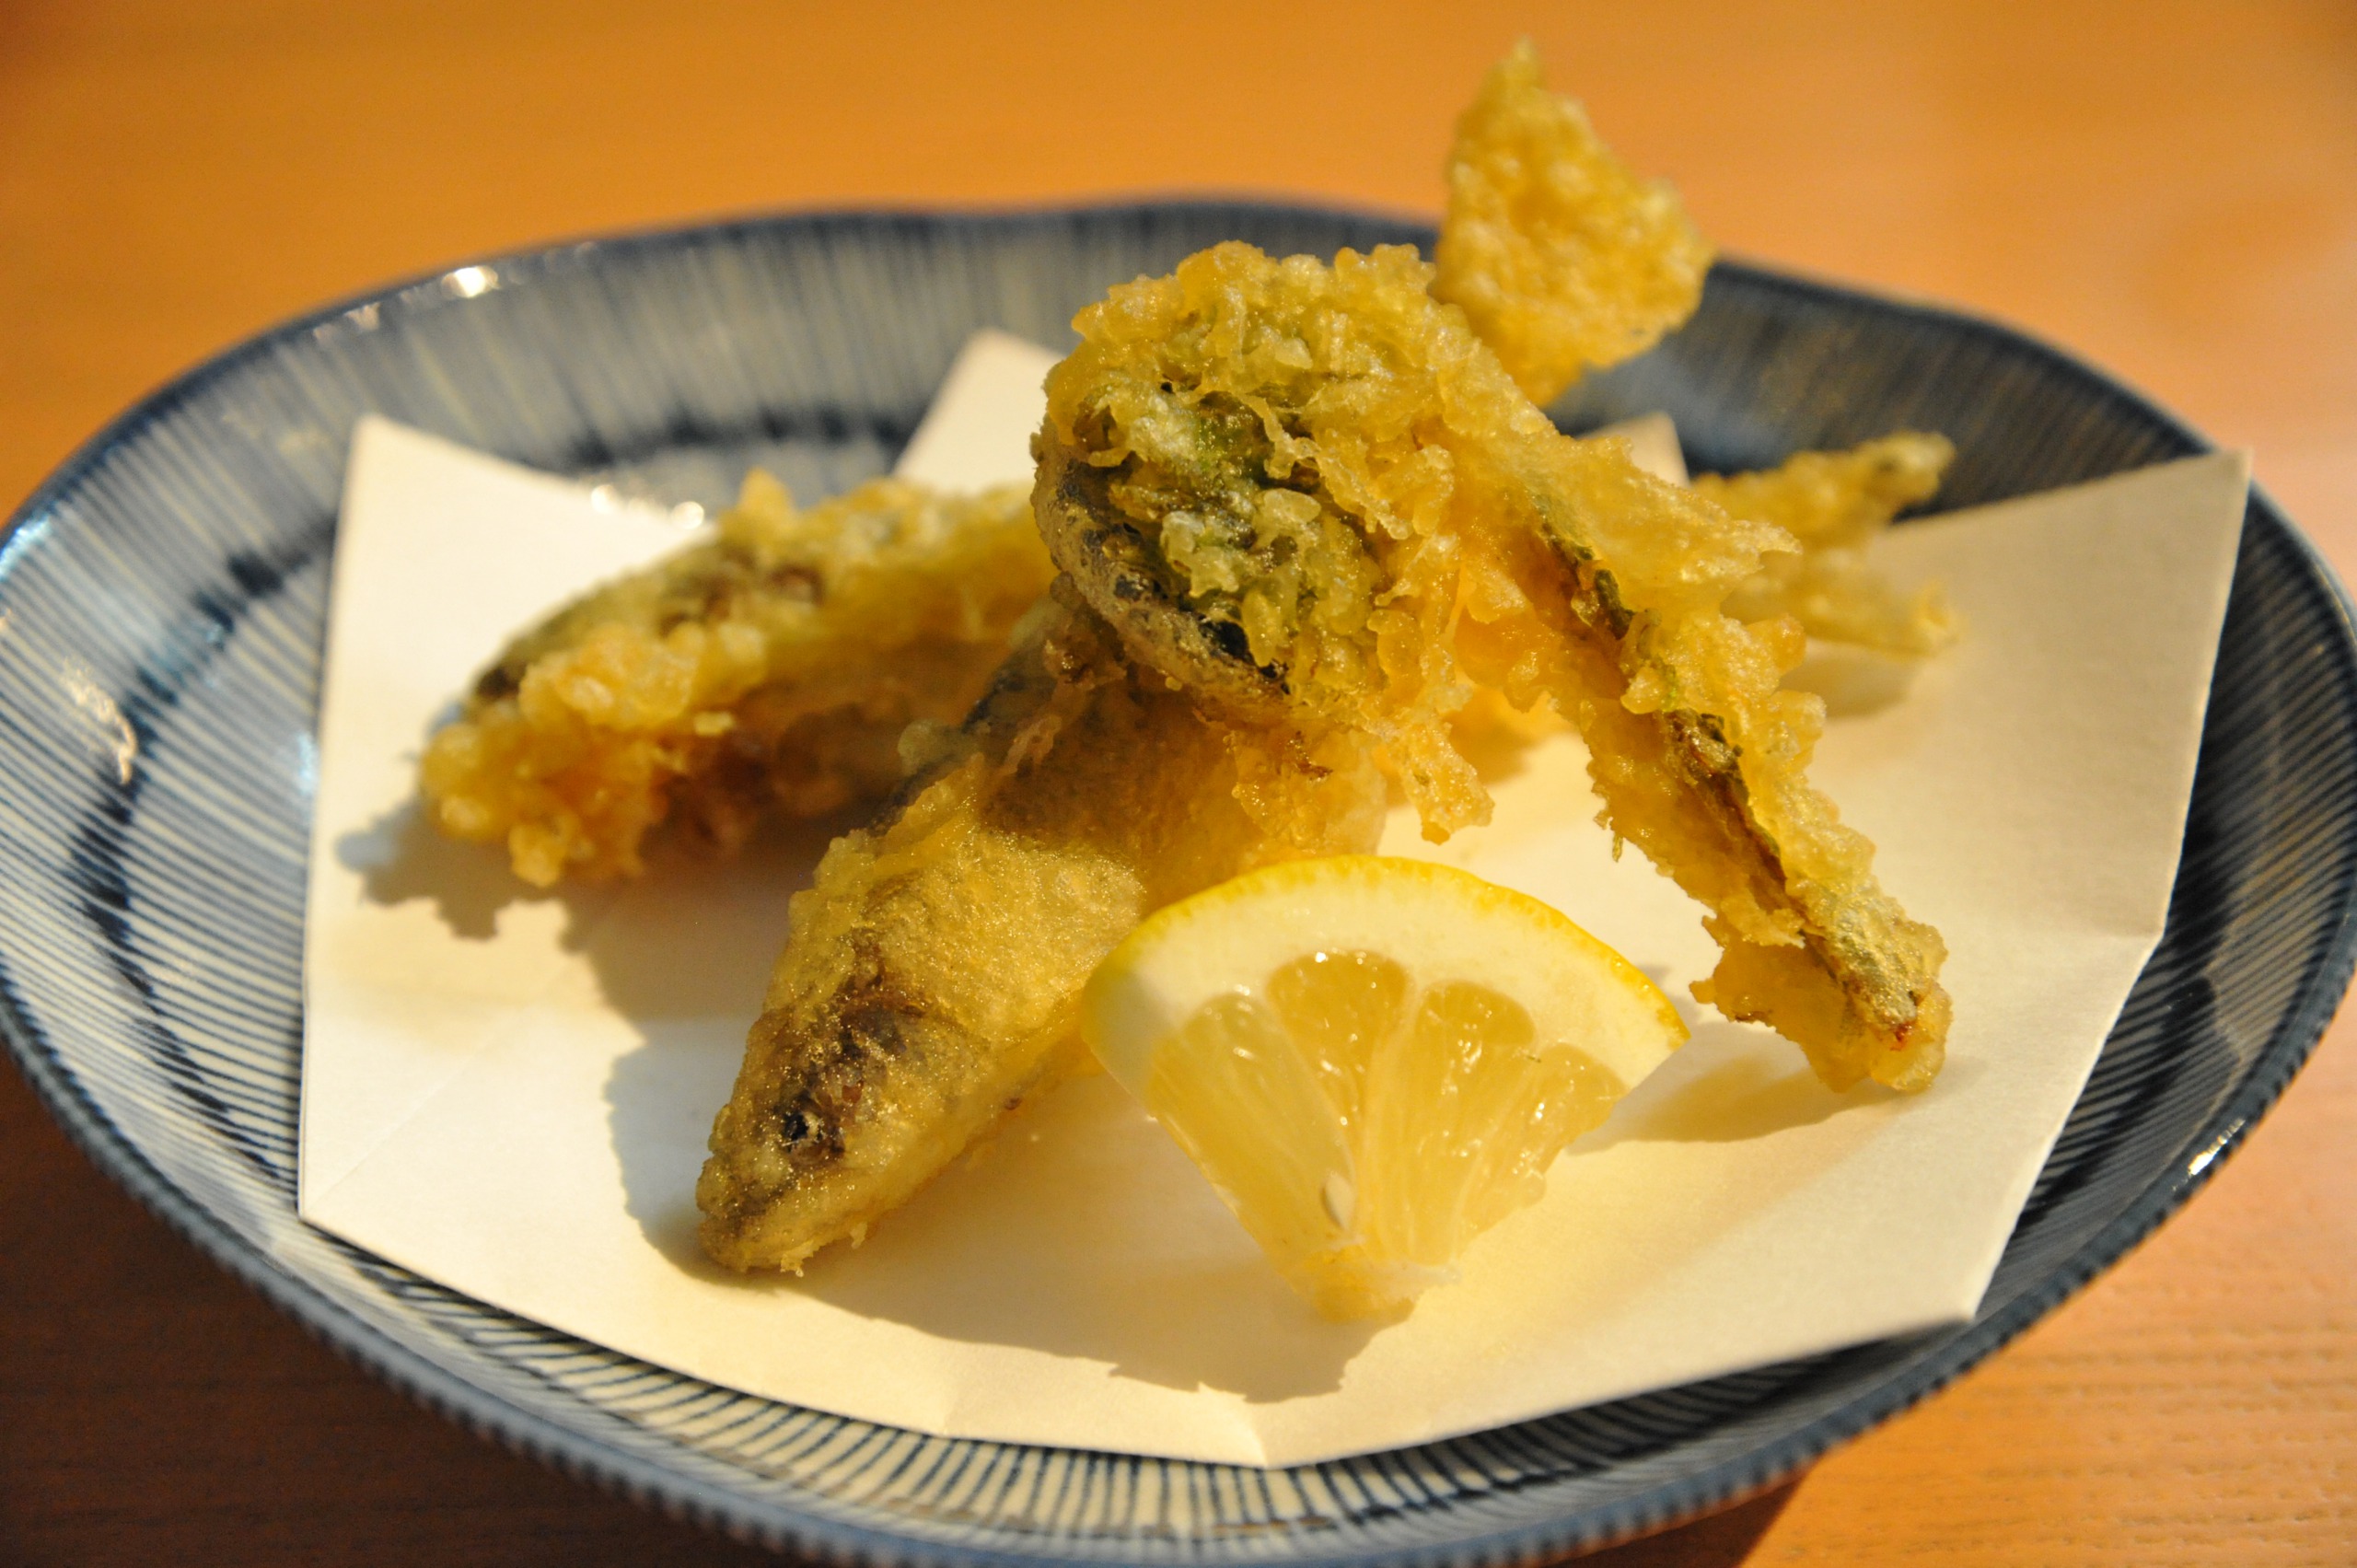 【揚物】 稚鮎とこごみの天麩羅。日本酒に合う５月の揚物は稚鮎に限ります